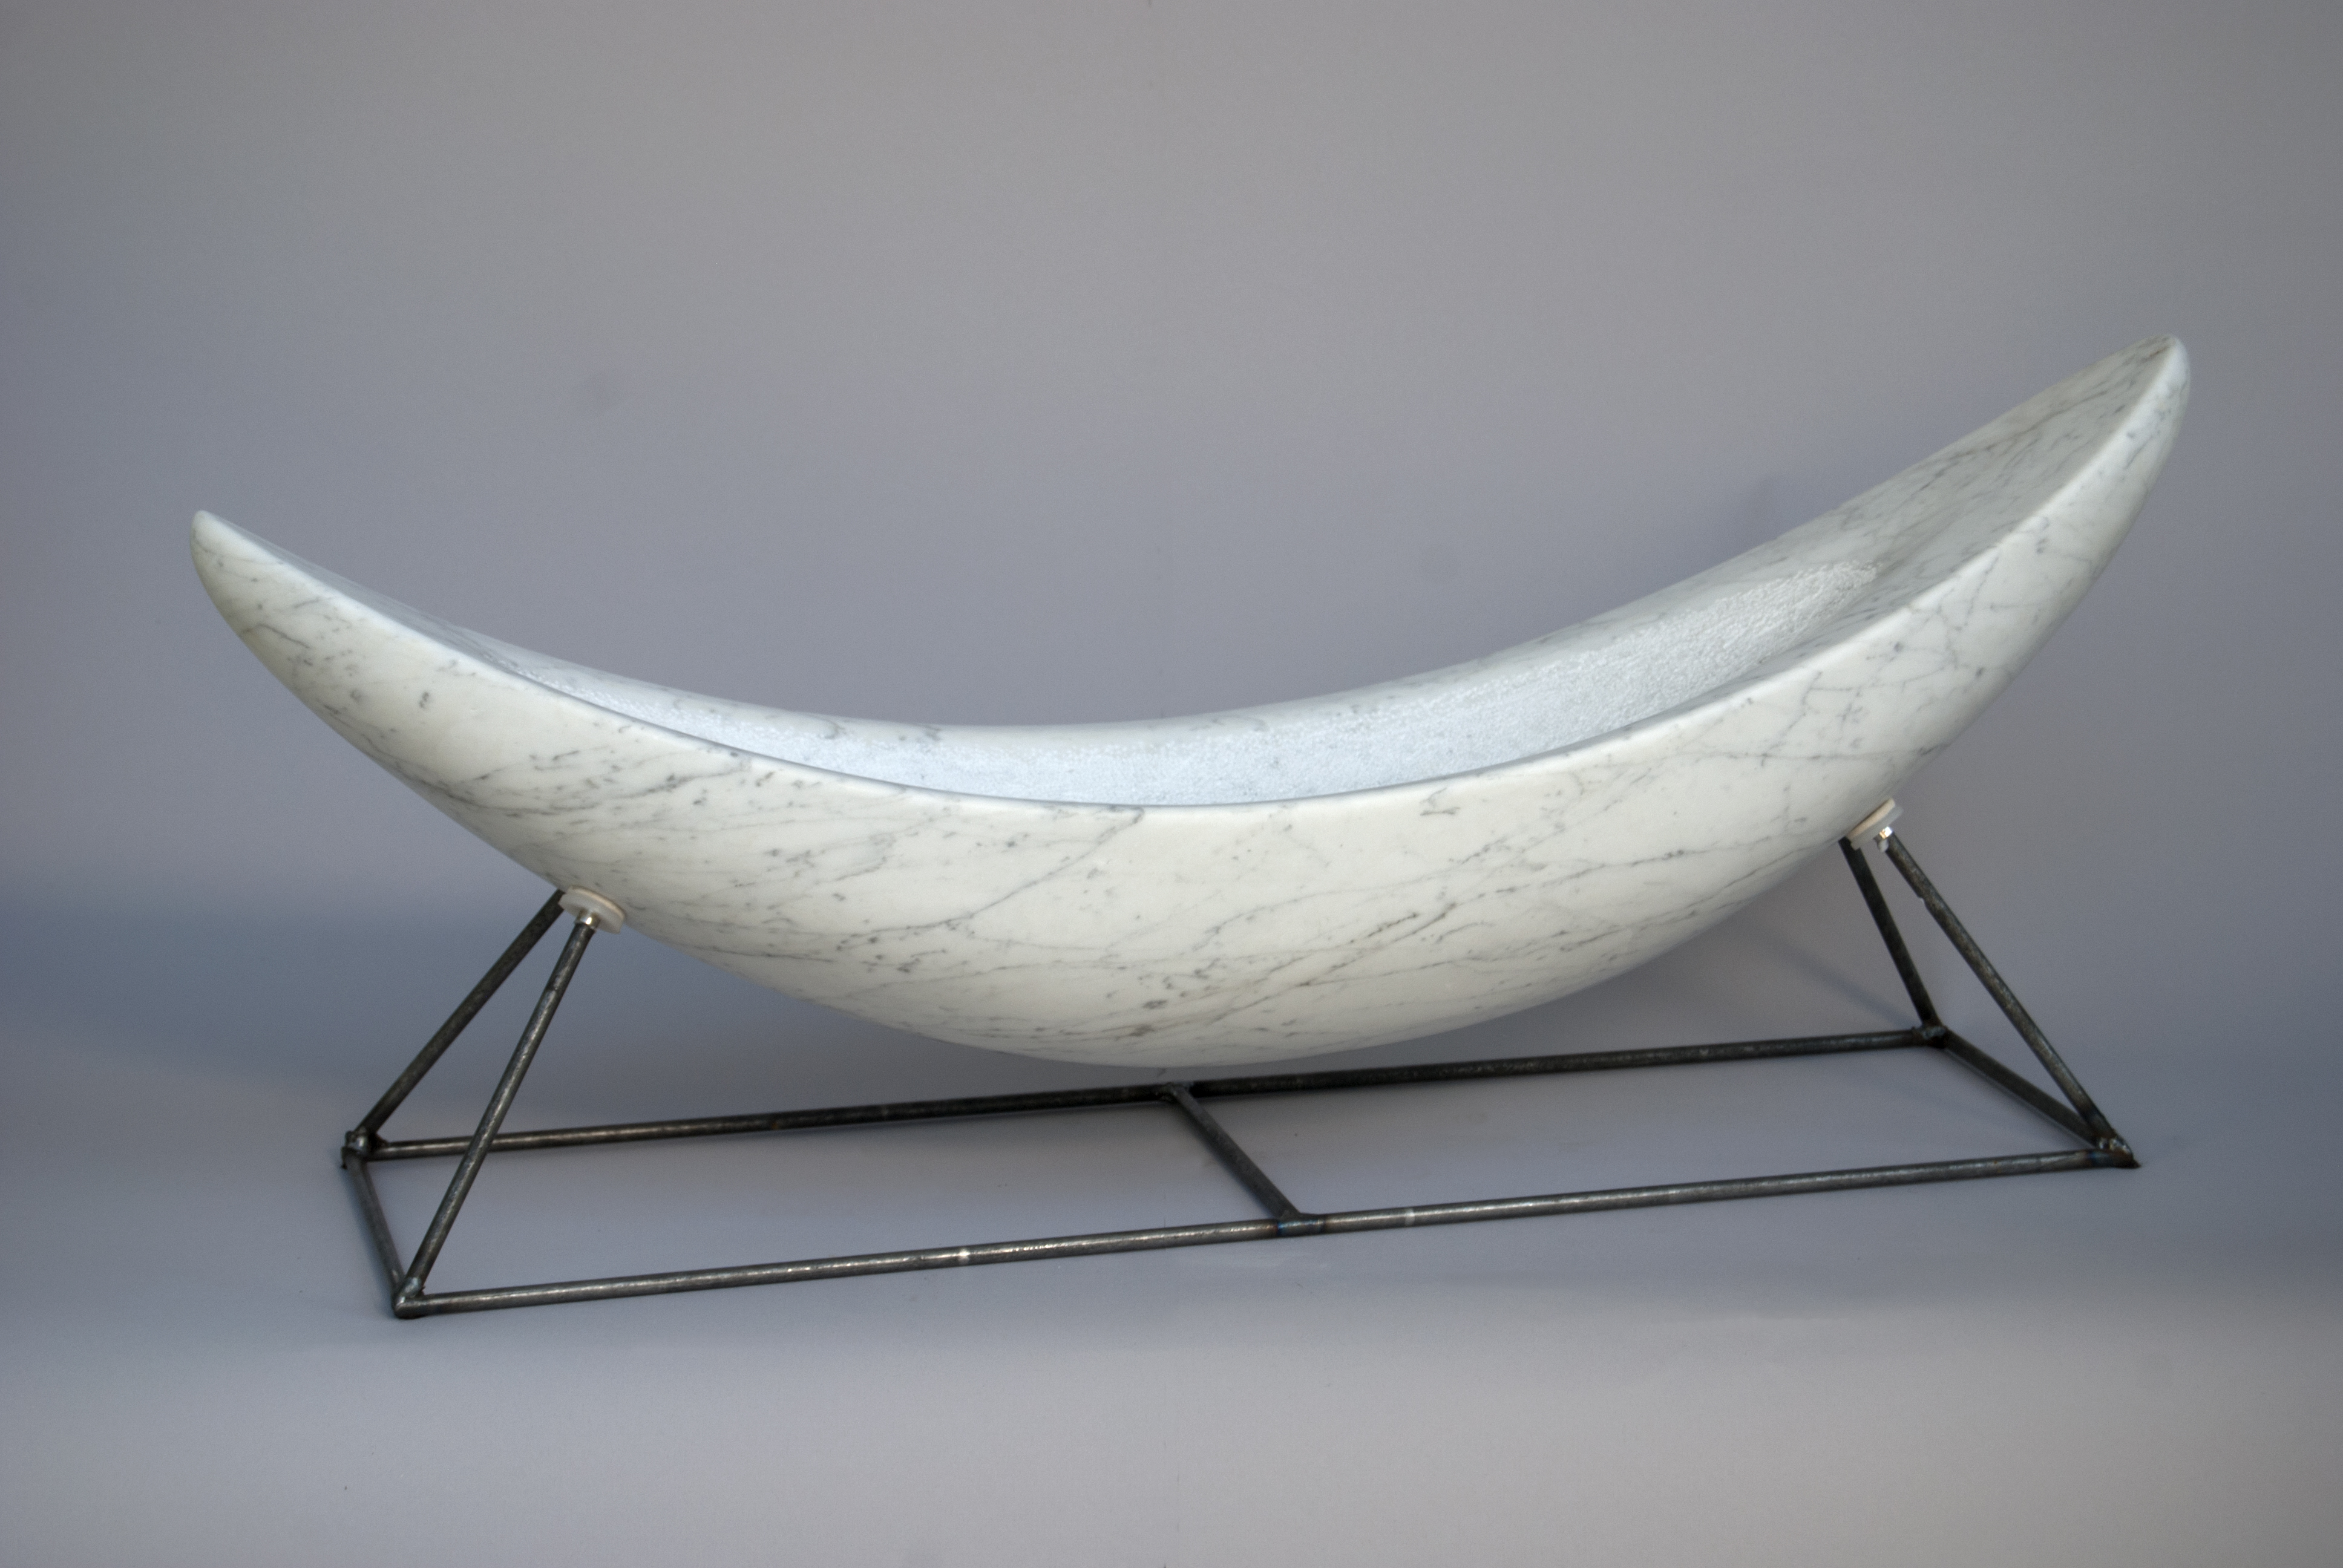 Ken Barnes “Cradle”, 33” X 12” X 9”, 2013, Carrara marble